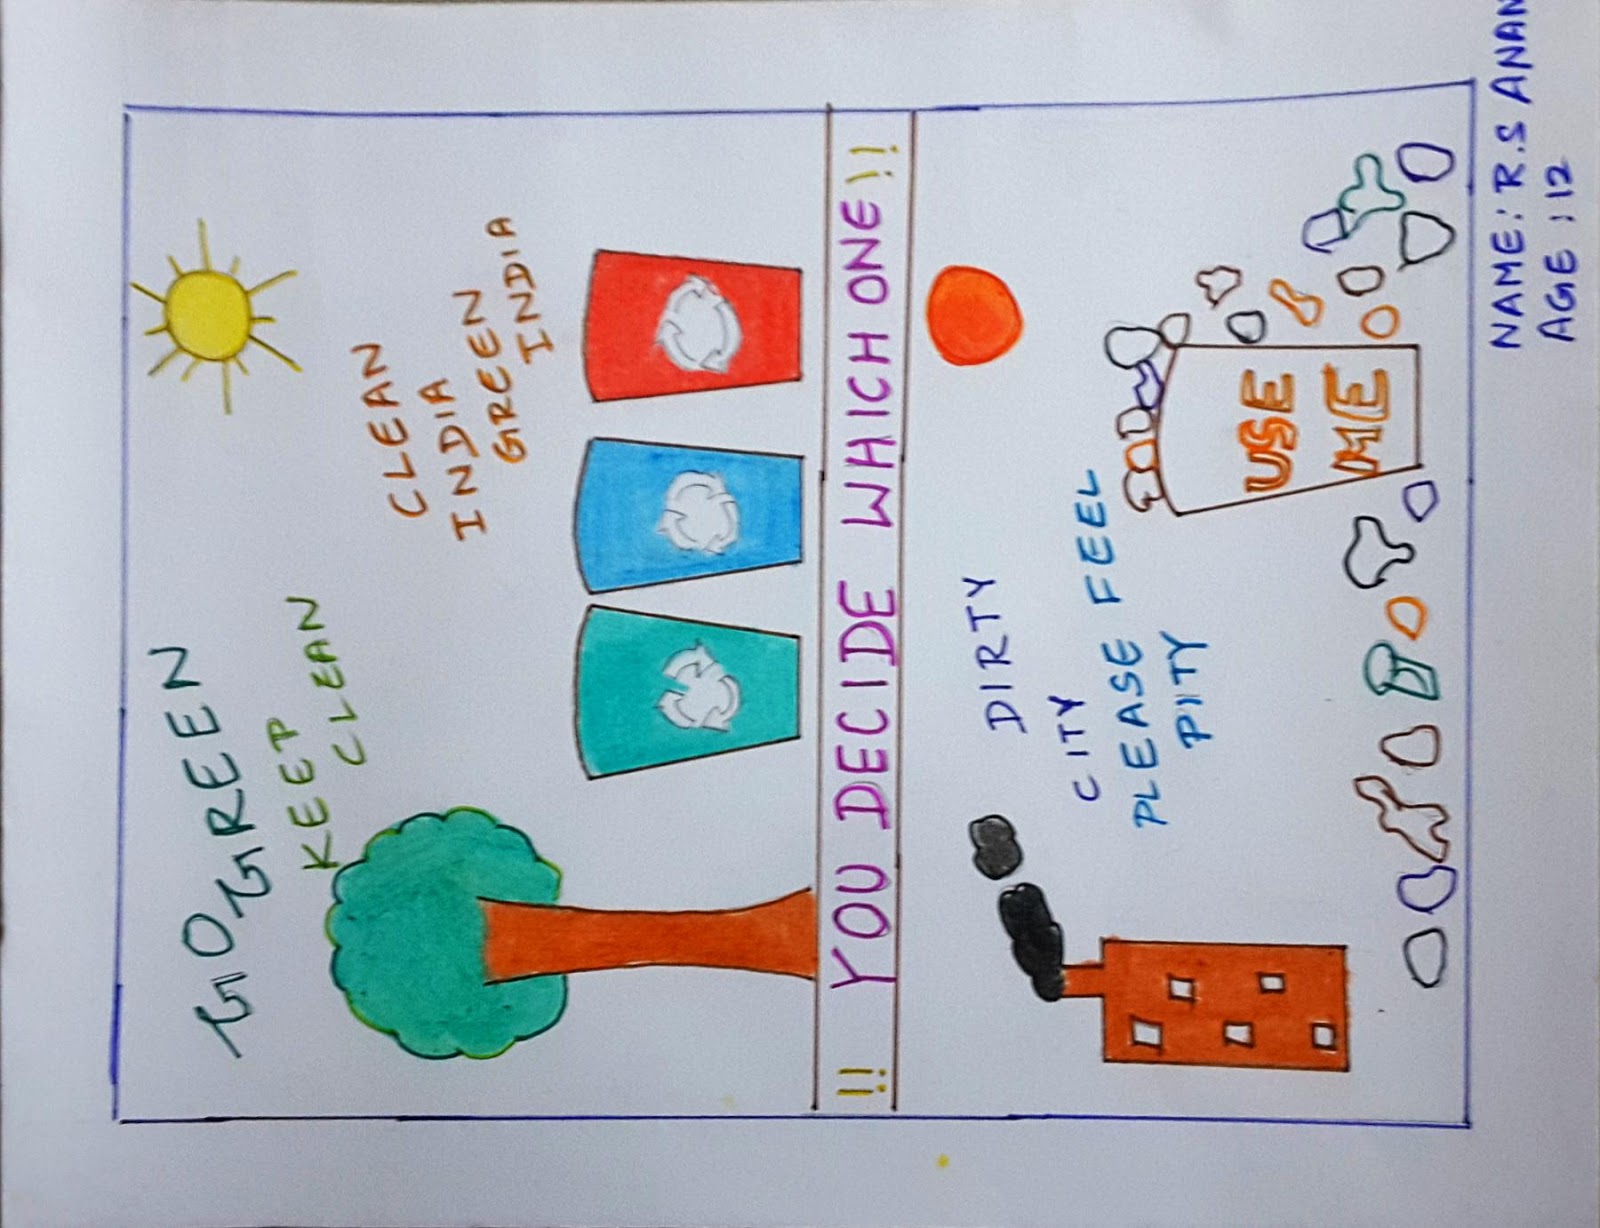 6वीं से 8वीं कक्षा के छात्रों के लिए 'घरेलू स्वच्छता' पर चित्रकला  प्रतियोगिता | मध्य प्रदेश